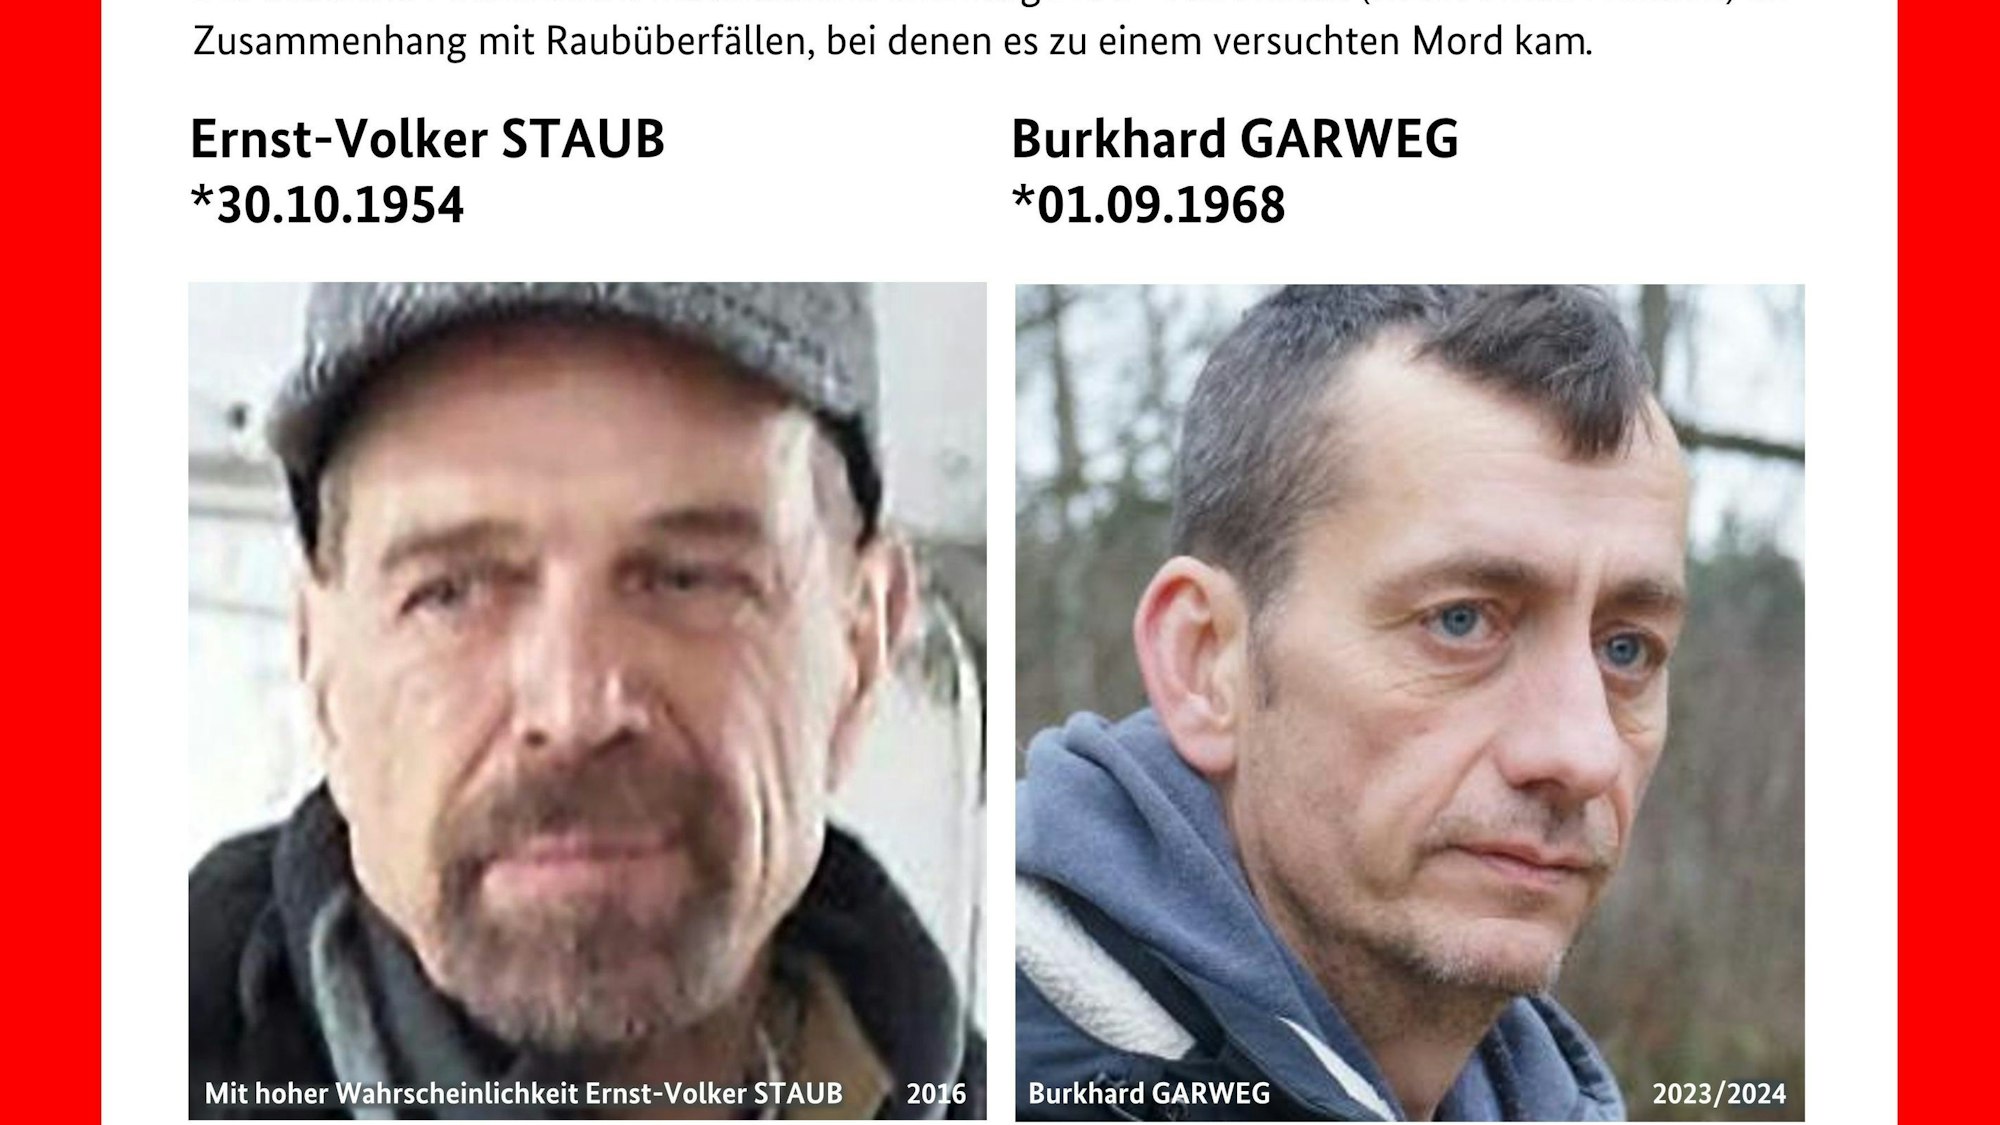 Mit diesem Plakat-Handout fahnden die Staatsanwaltschaft Verden und das Landeskriminalamt (LKA) Niedersachsen gemeinsam nach den beiden gesuchten Ex-RAF-Terroristen Ernst-Volker Staub und Burkhard Garweg.